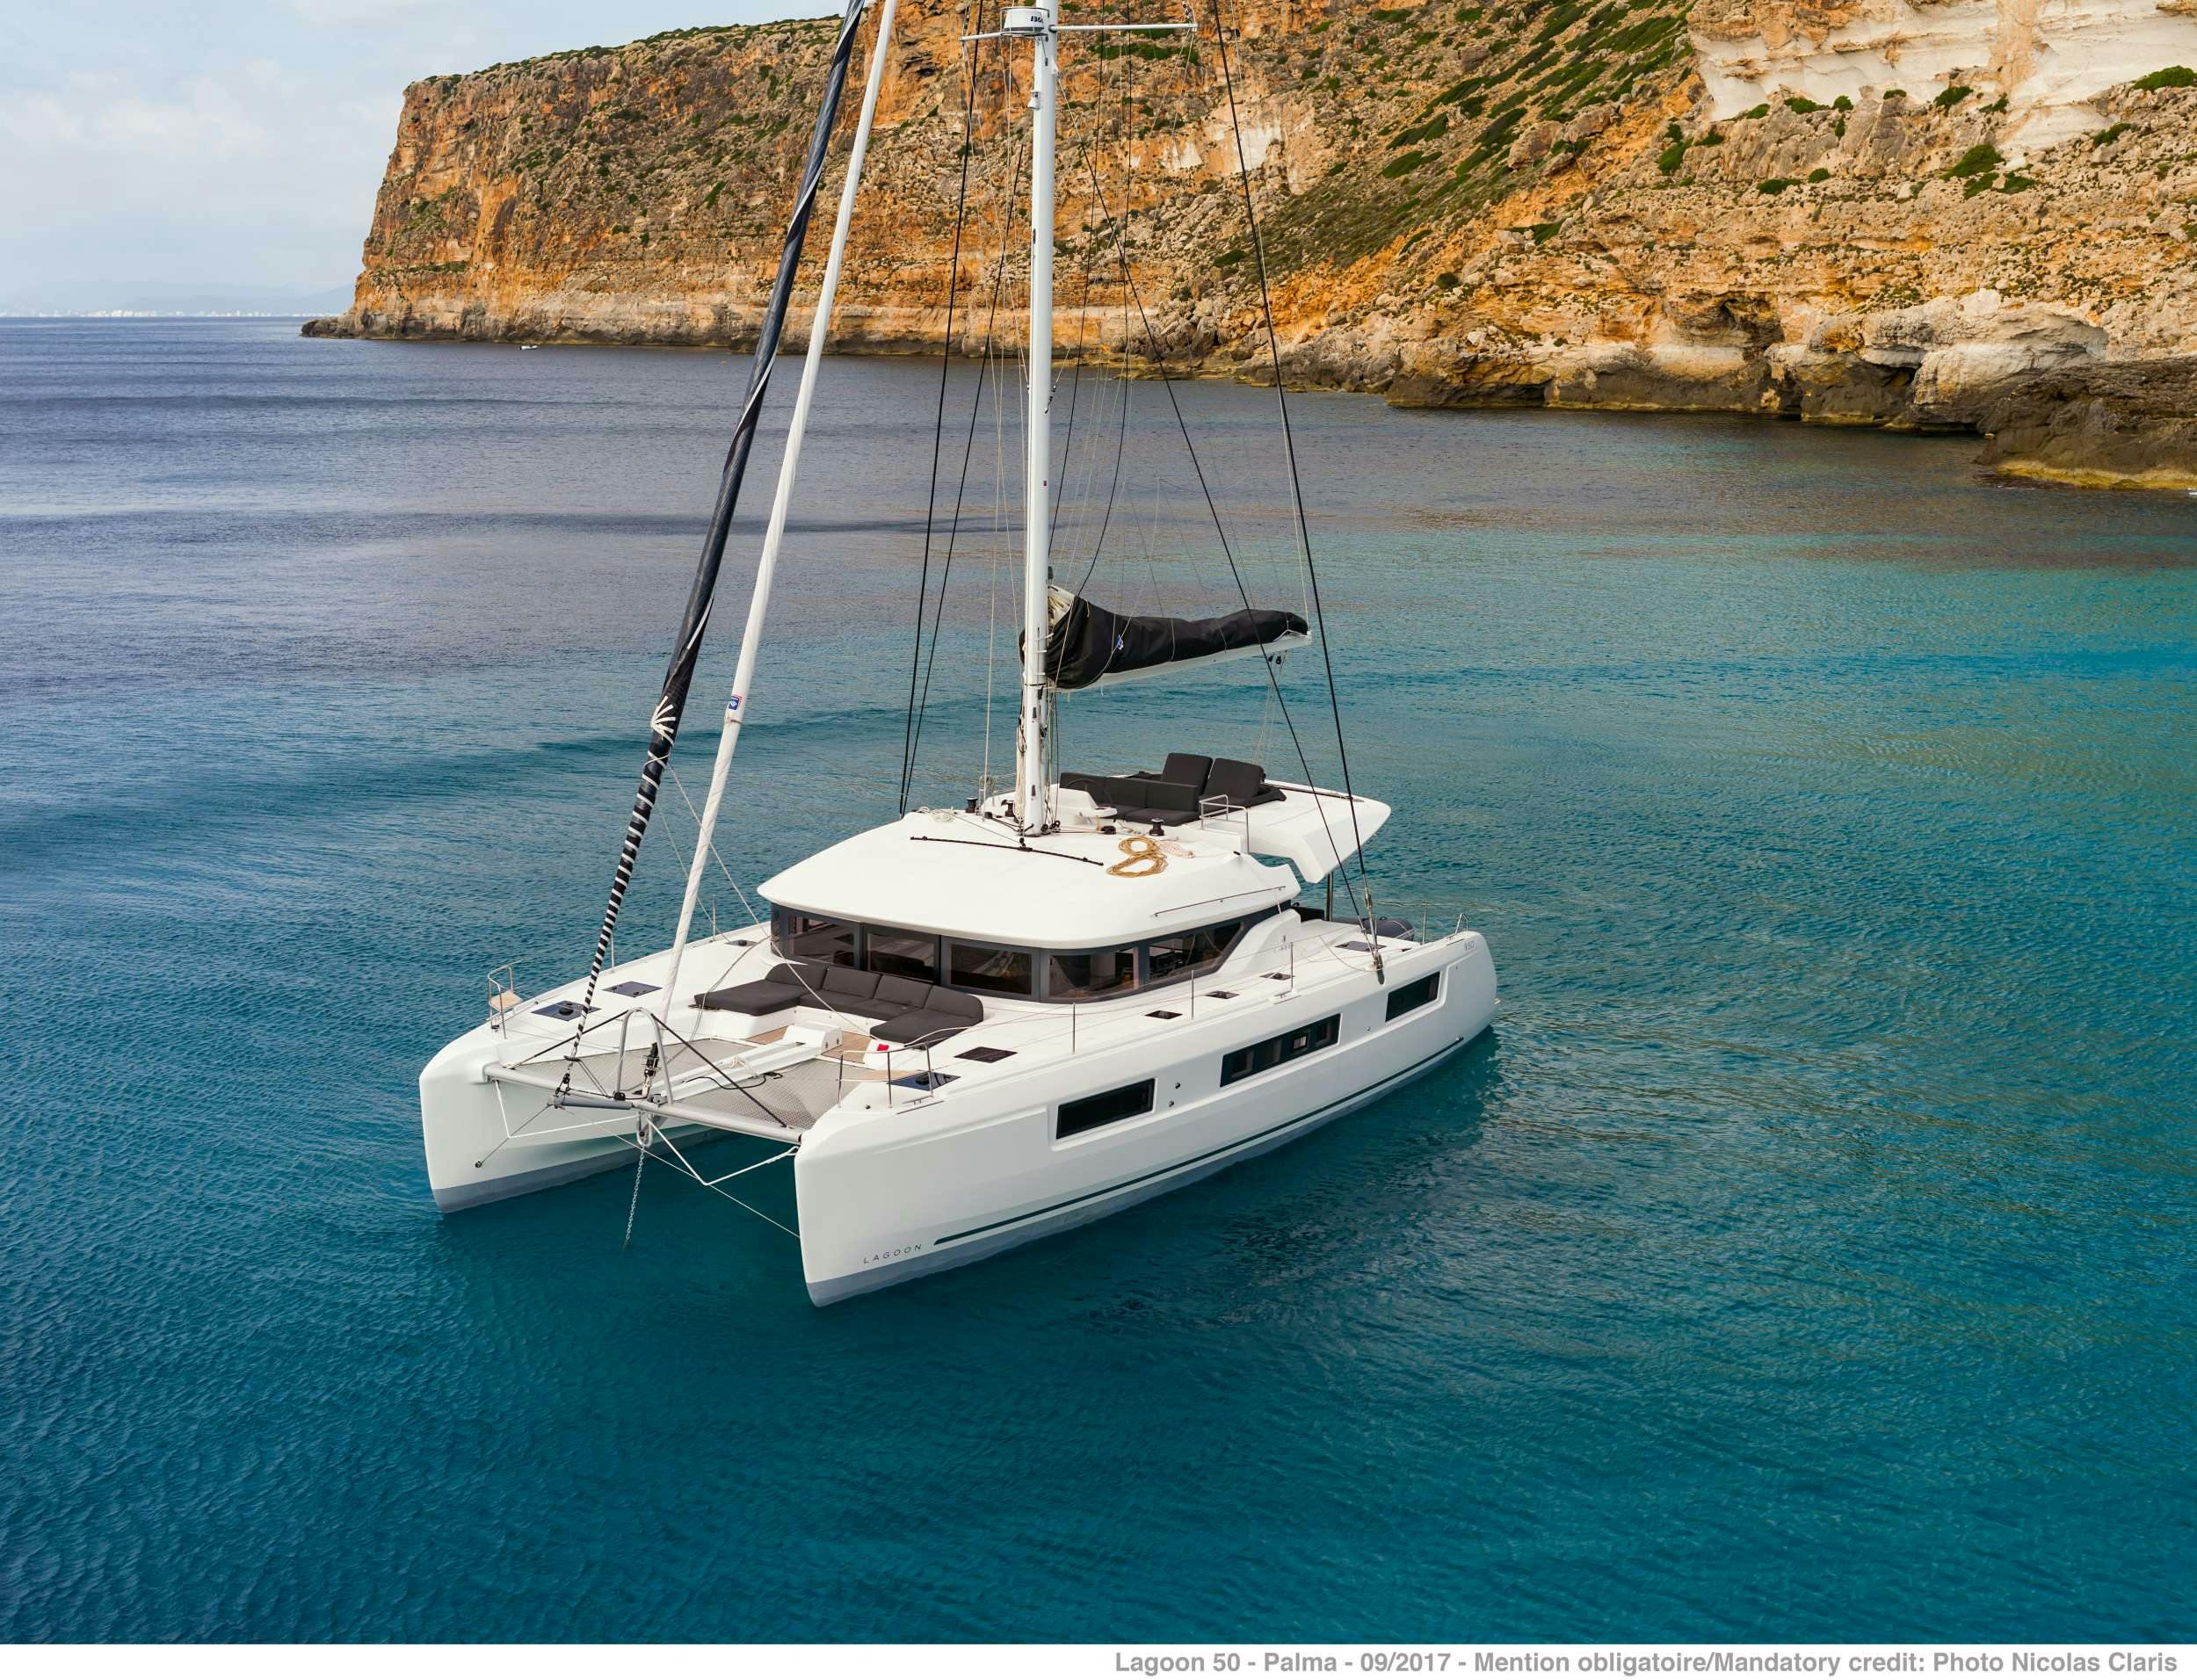 ONEIDA 2 - Yacht Charter Milos & Boat hire in Greece 1